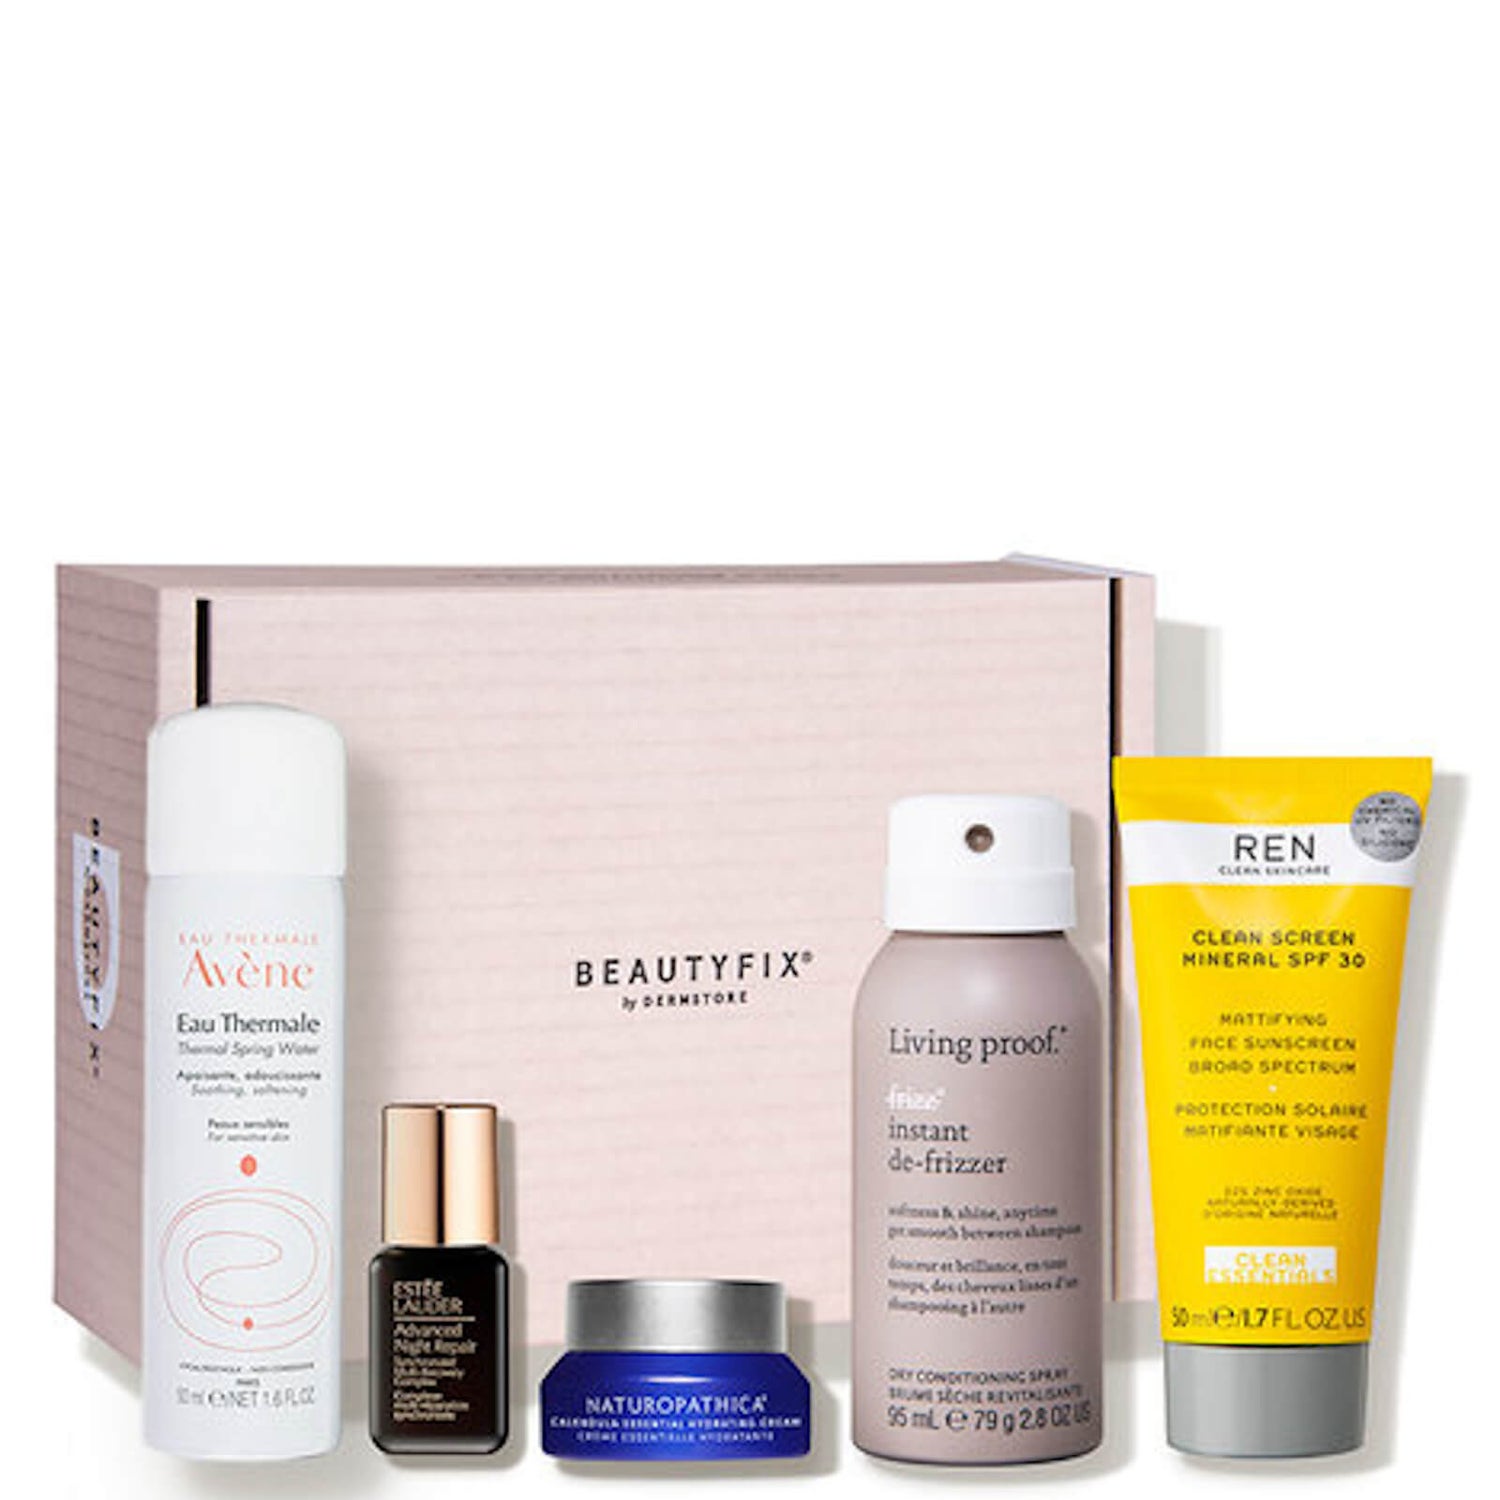 BeautyFIX Skincare kit